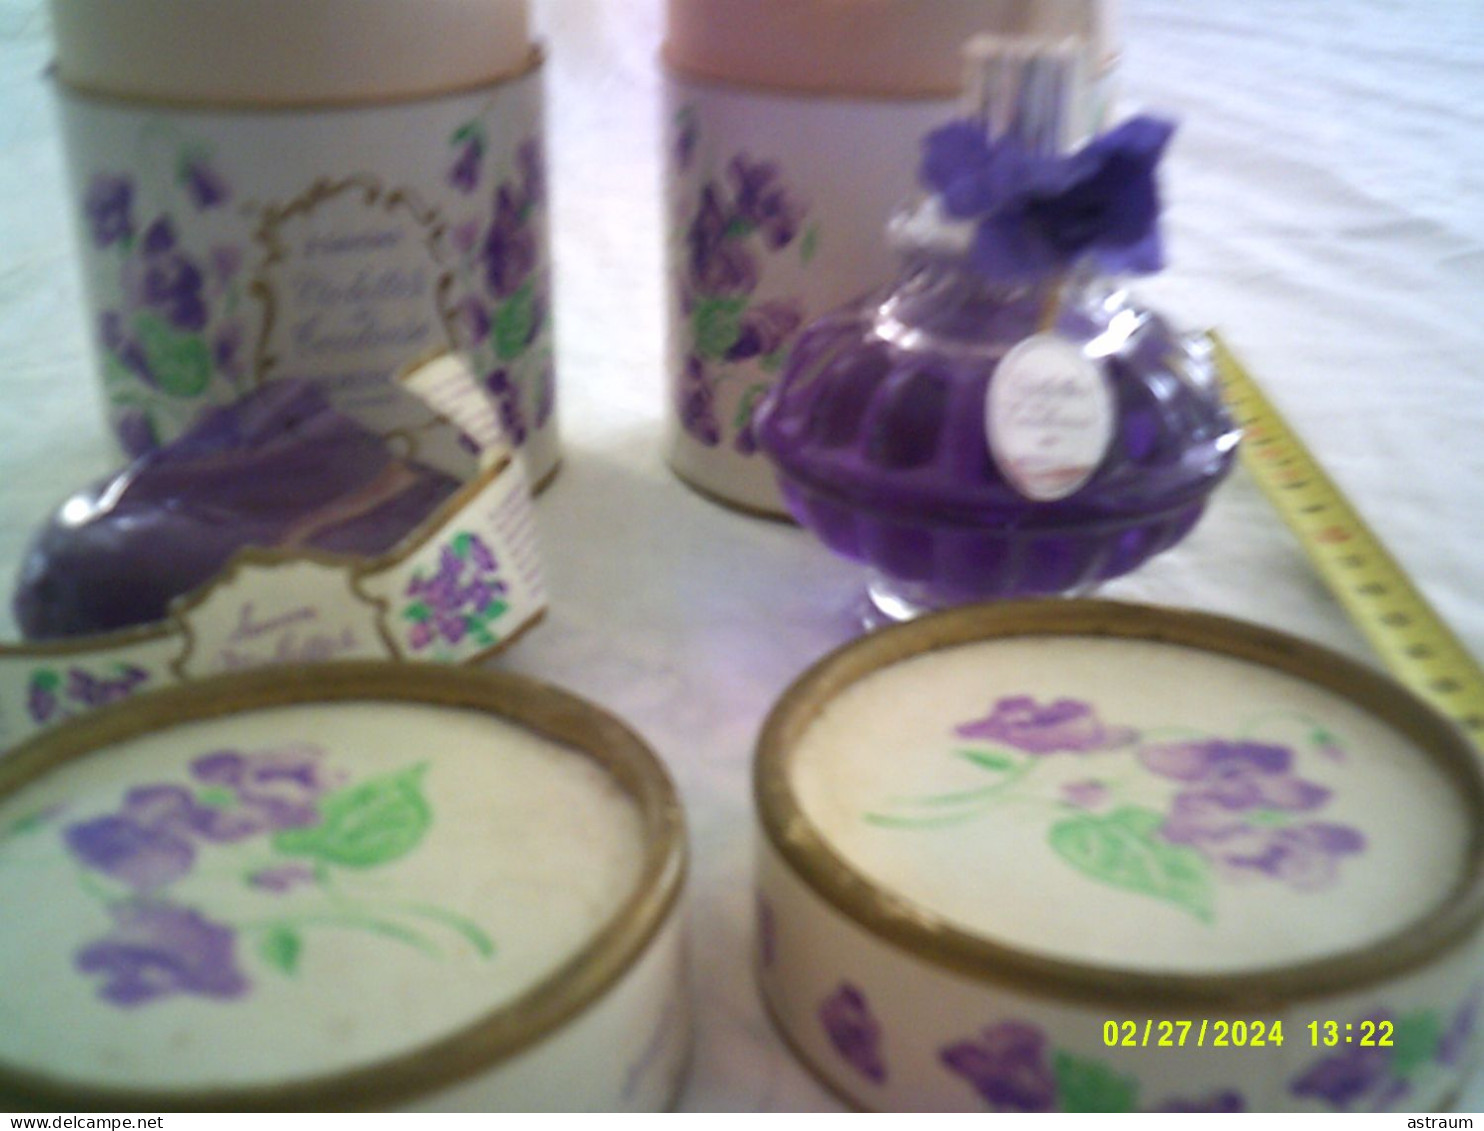 2 Coffret Vintage Parfum - Berdoues - Violettes De Toulouse - 80ml + 1 Boite Avec 1 Savon - Miniatures Womens' Fragrances (in Box)